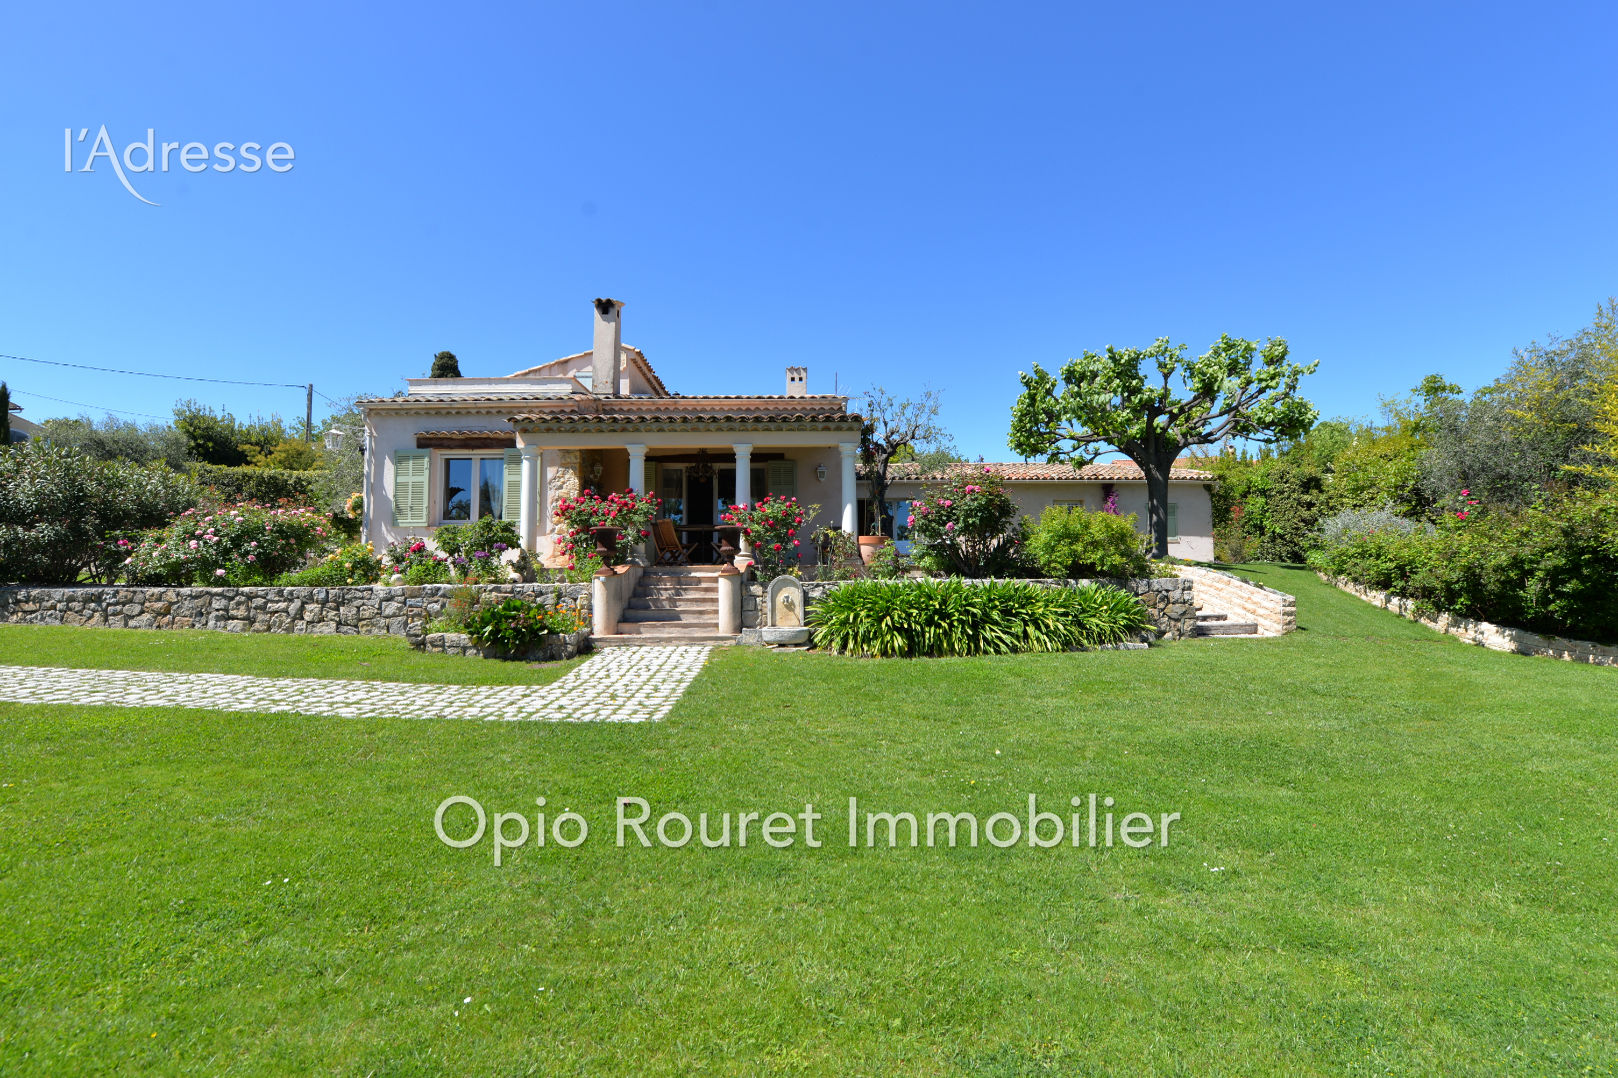 Vente Maison 200m² à Châteauneuf-Grasse (06740) - Opio Rouret Immobilier